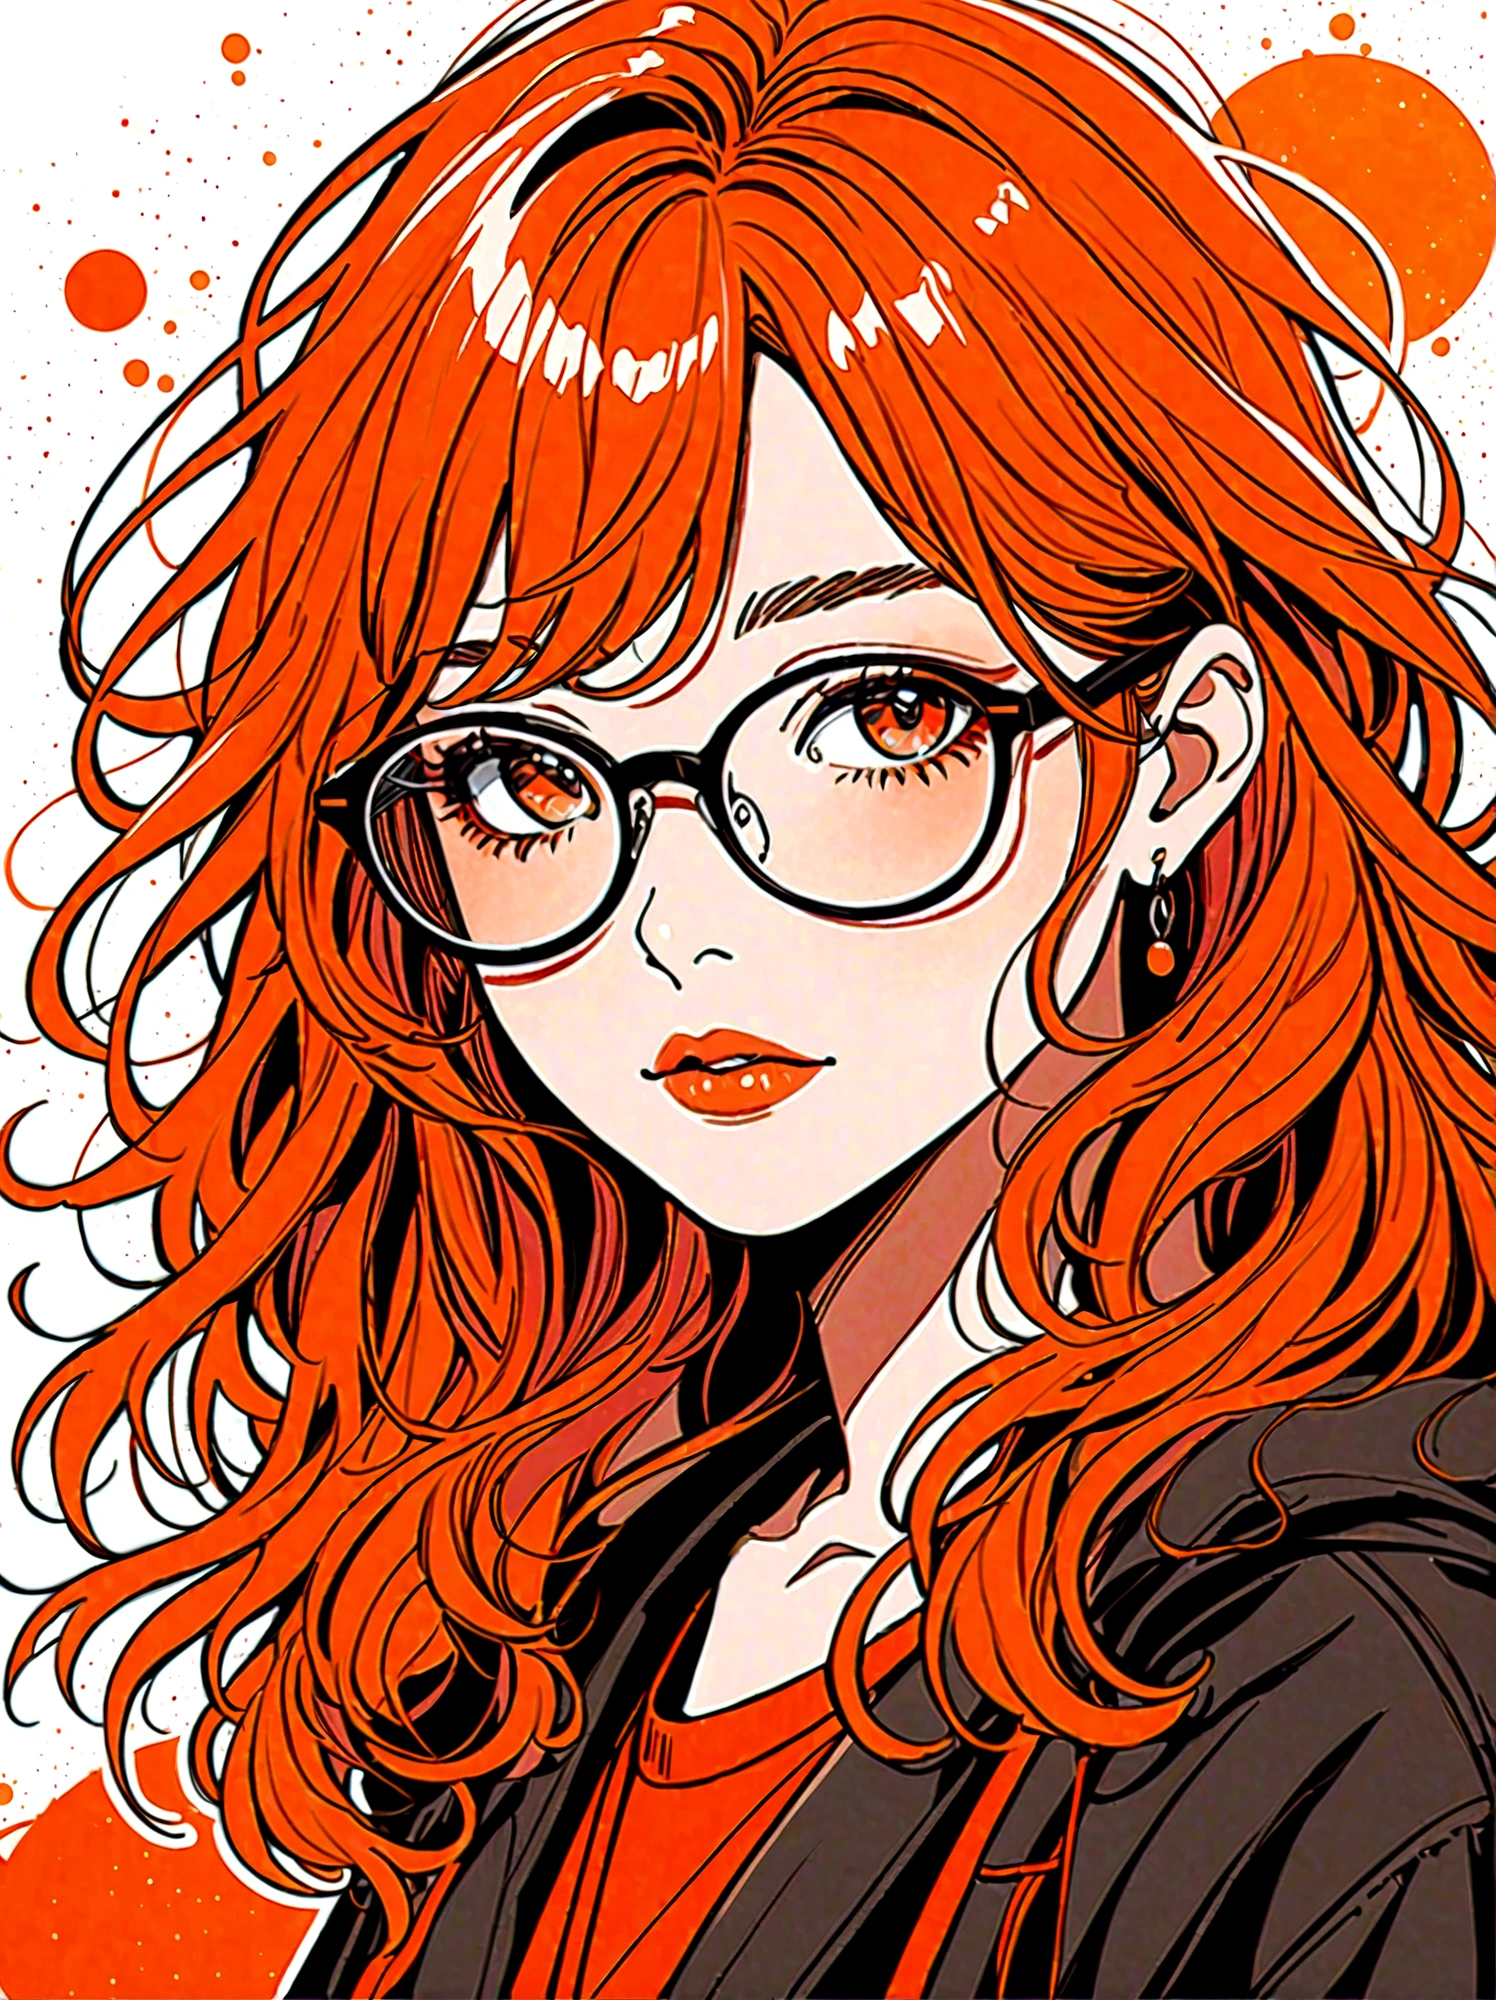 (Meisterwerk, beste Qualität:1.2), Cartoon von Hand gezeichnet, 1 Mädchen, Allein, Eine Brille tragen, Rouge, Zerzaustes Haar, Die Farbpalette ist in Rot, Orange- und Schwarztöne und hat einen skizzenhaften Stil. Der Hintergrund sollte ein einfaches handgezeichnetes Doodle-Muster haben, 1shxx1